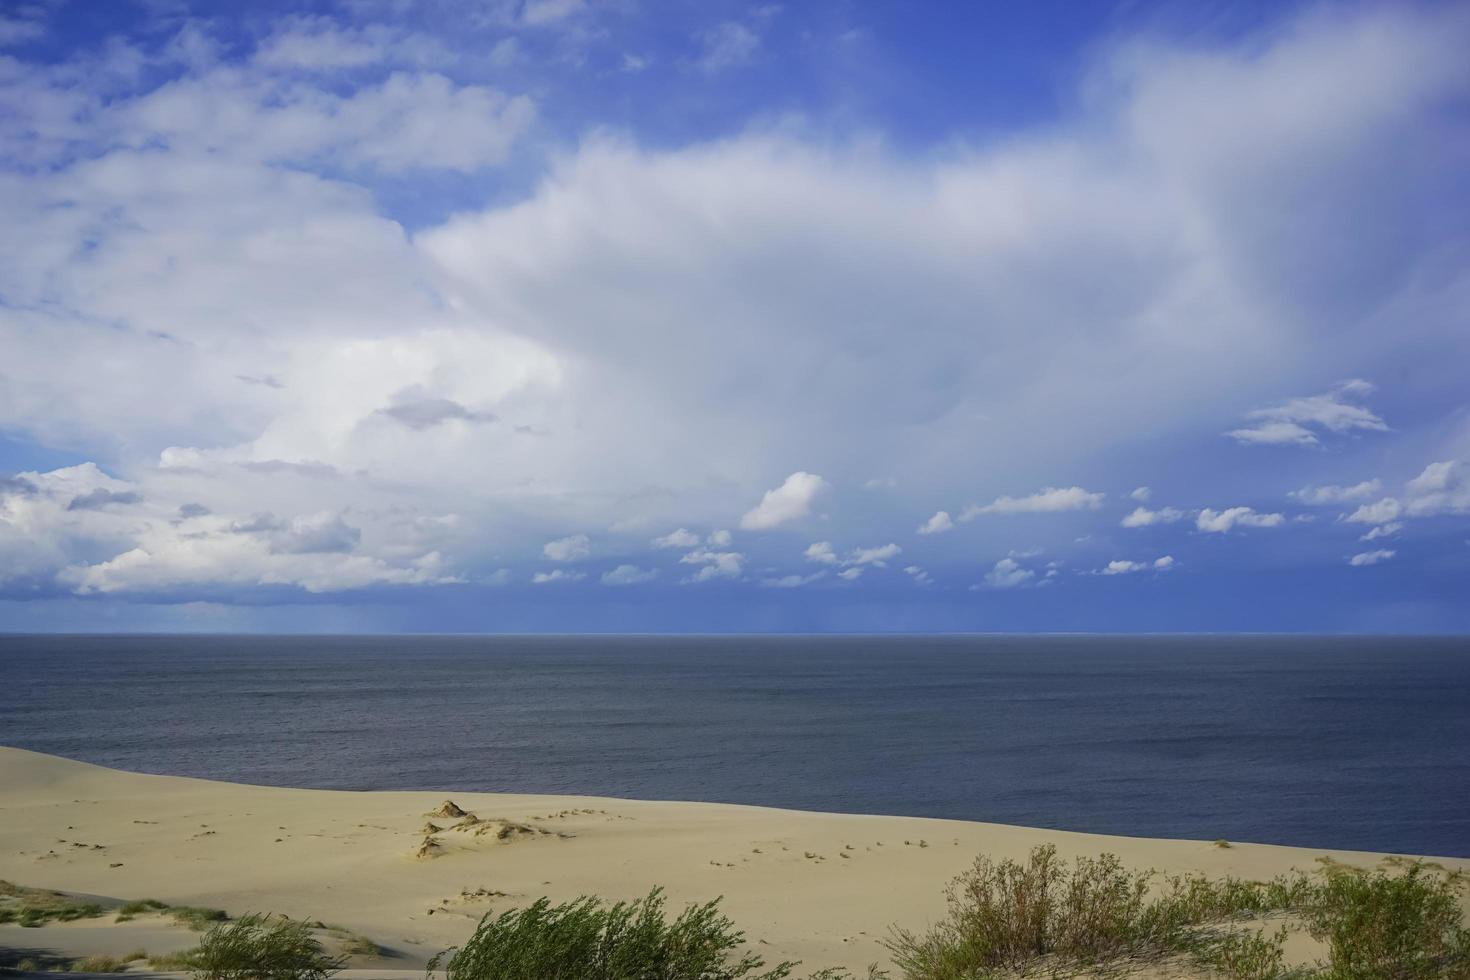 paysage marin de la mer baltique avec dunes de sable côtières de la broche de Courlande. photo